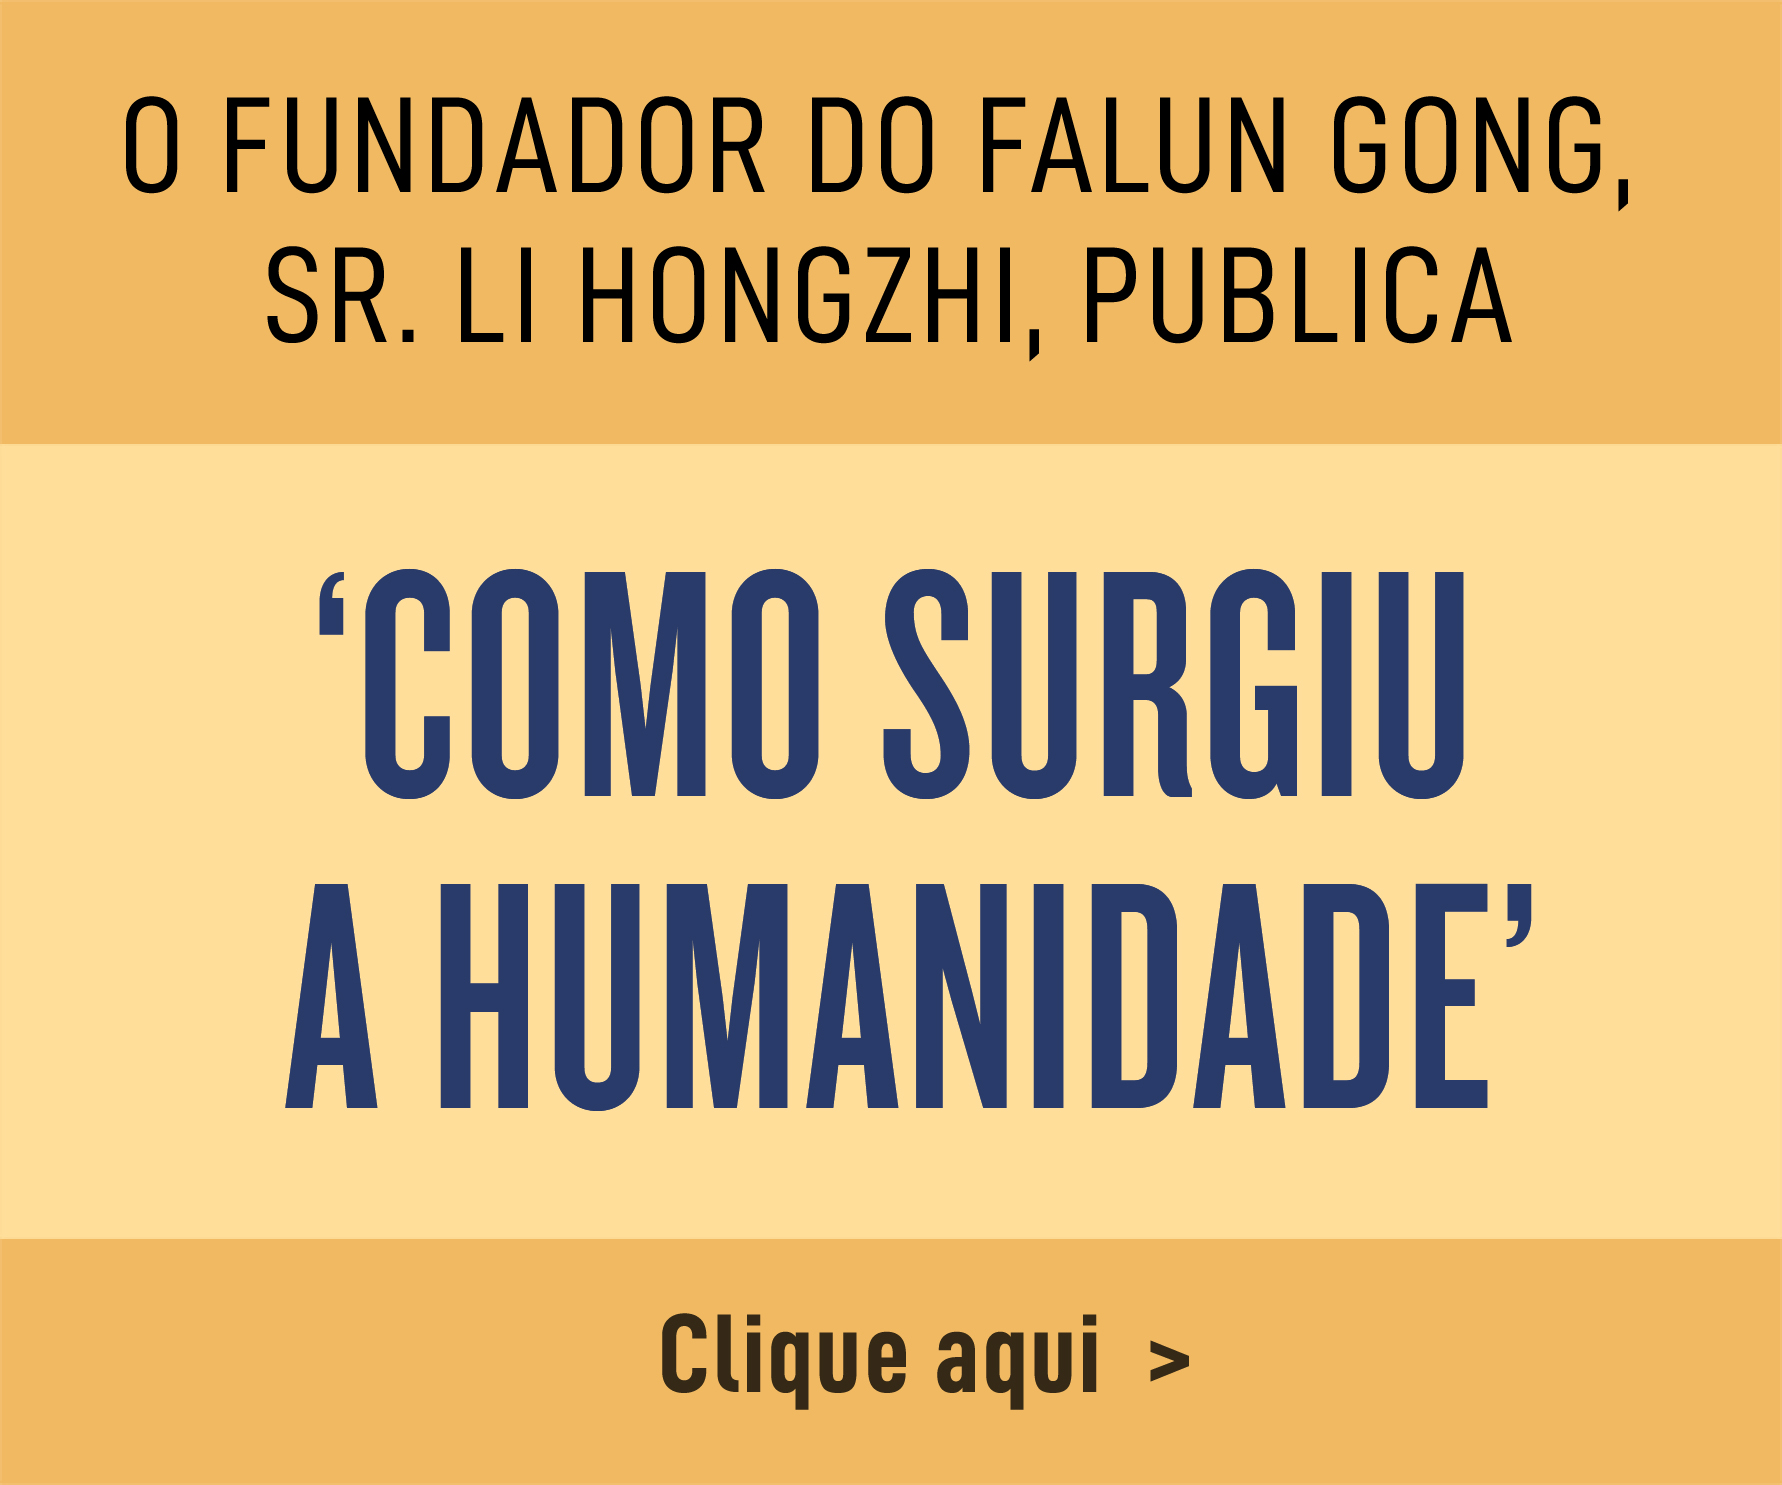 O fundador do Falun Gong, Sr. Li Hongzhi, publica “Como surgiu a humanidade”